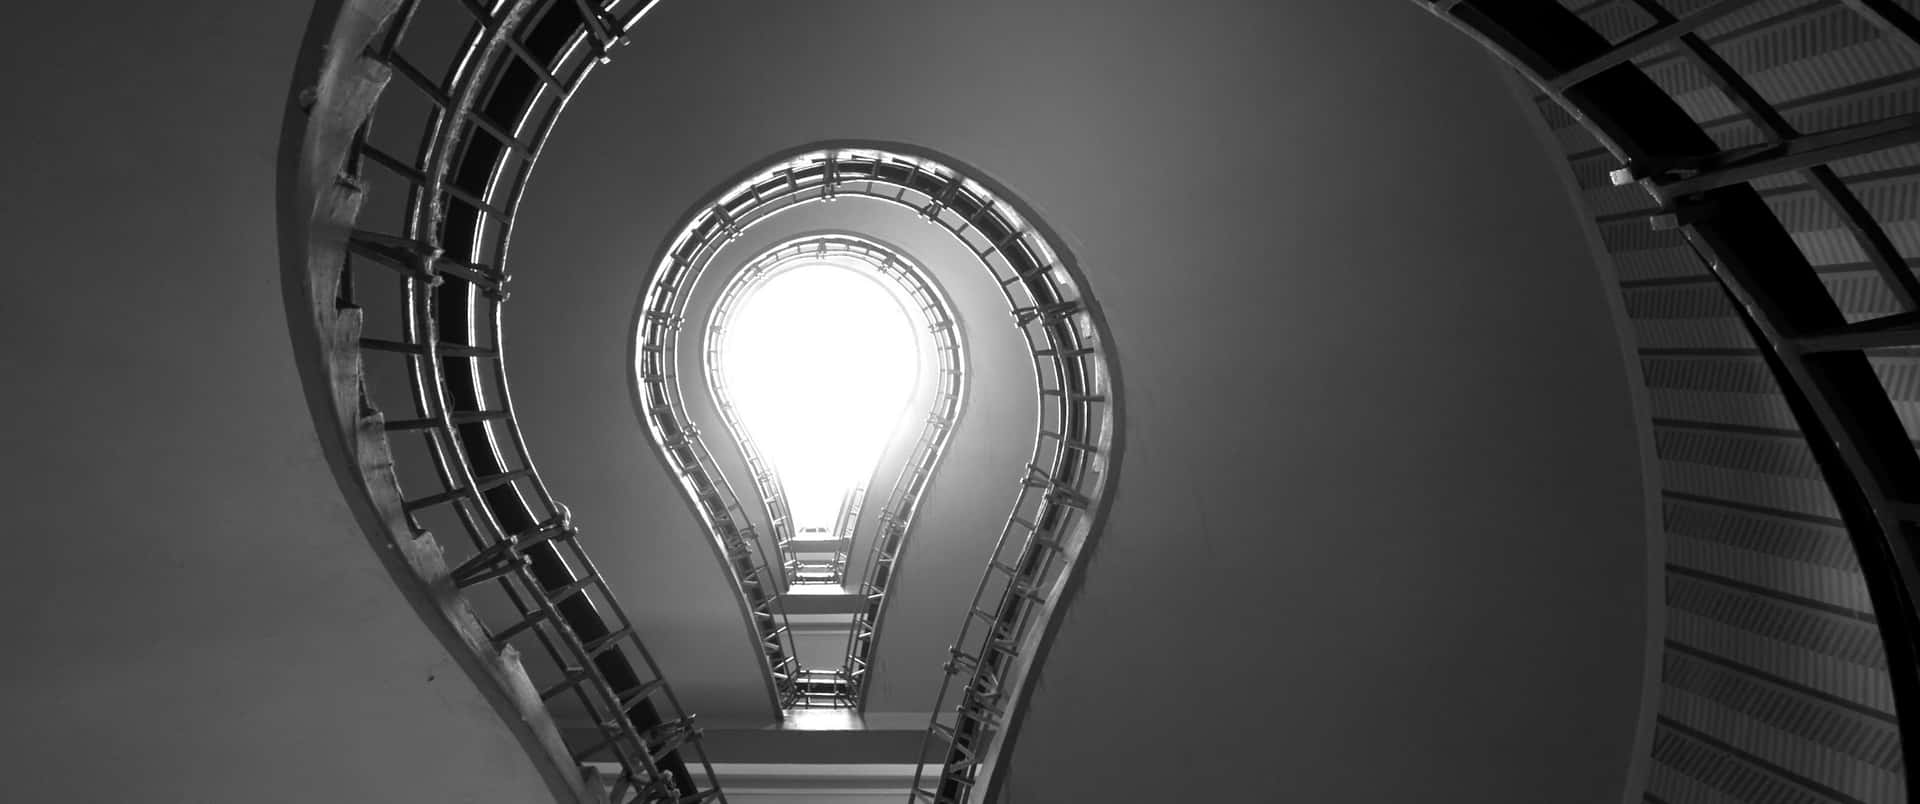 Umafoto Preta E Branca De Uma Escada Em Espiral